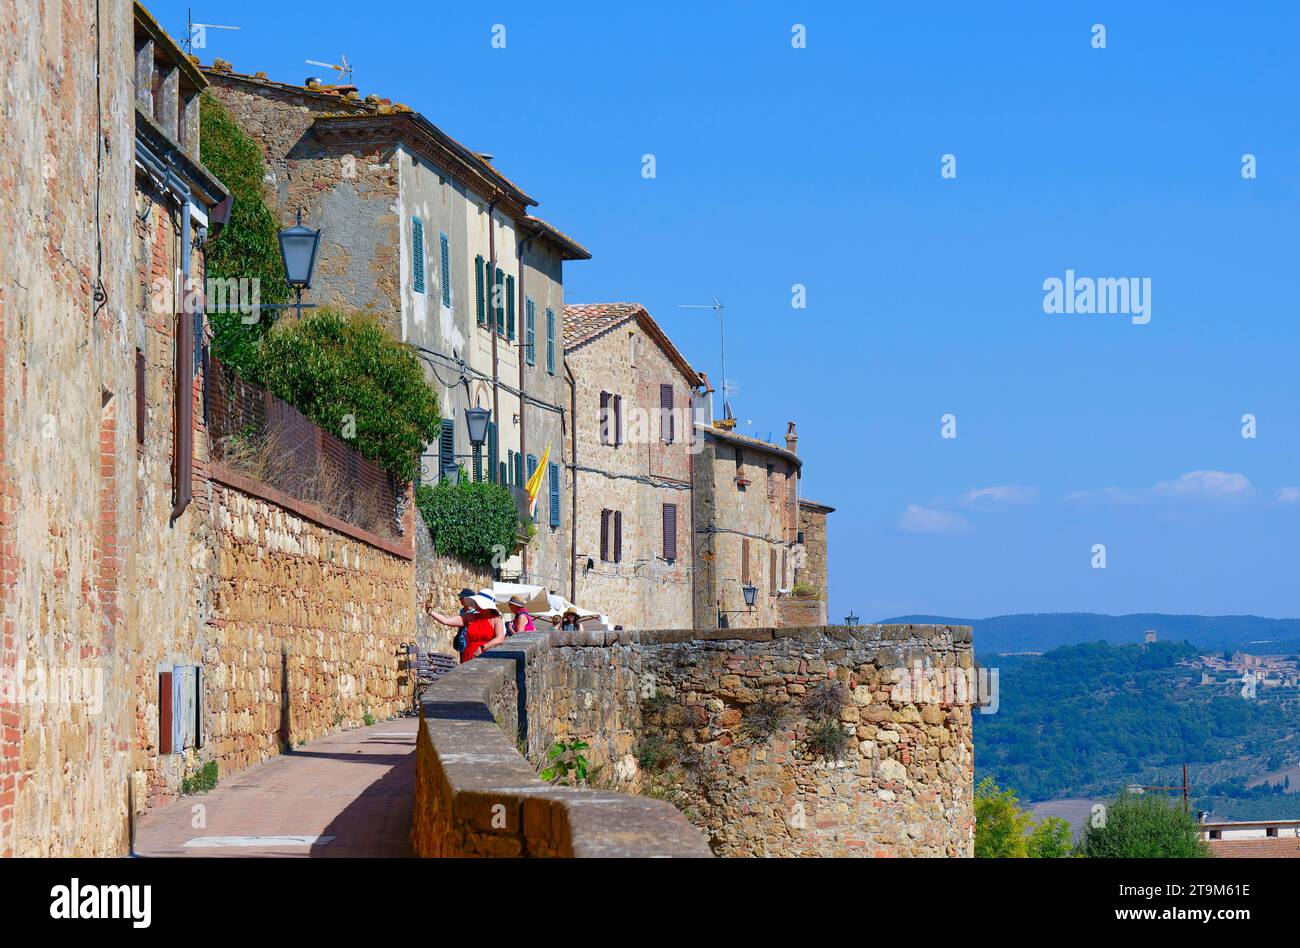 Outlook near via dell' Amore (Love street), Pienza, Tuscany, Italy Stock Photo